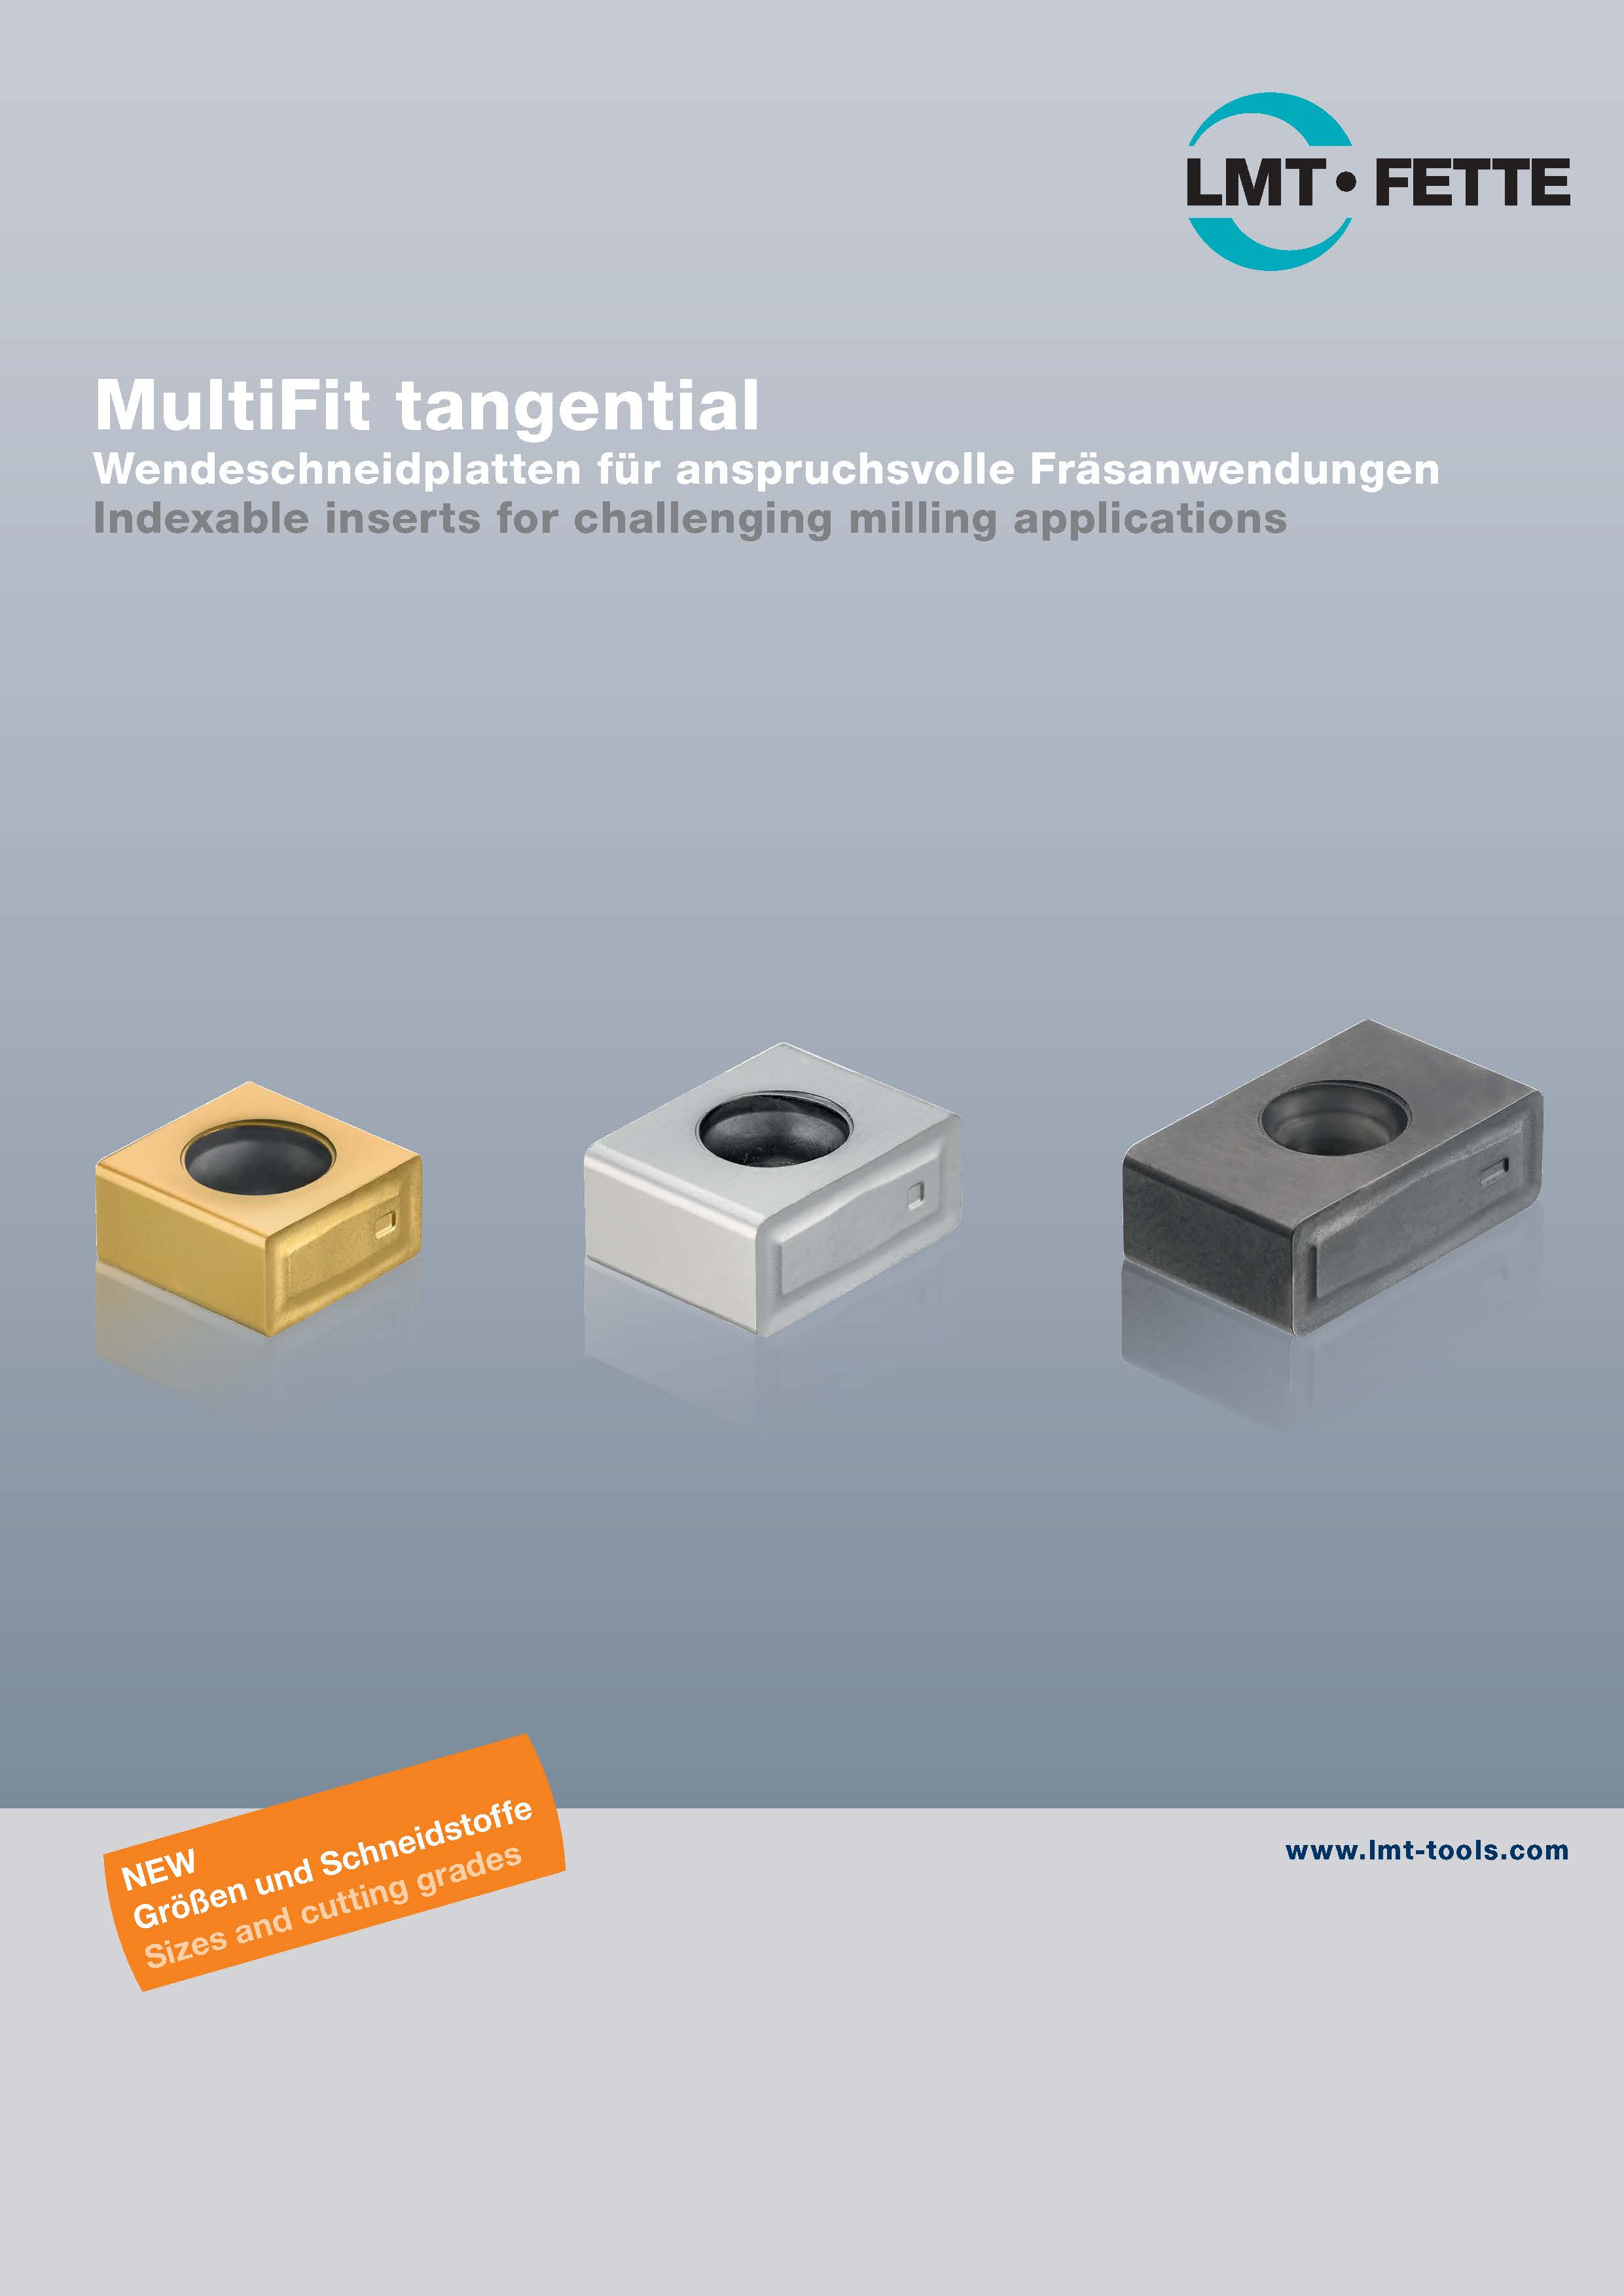 MultiFit tangential: Wendeschneidplatten für anspruchsvolle Fräsanwendungen